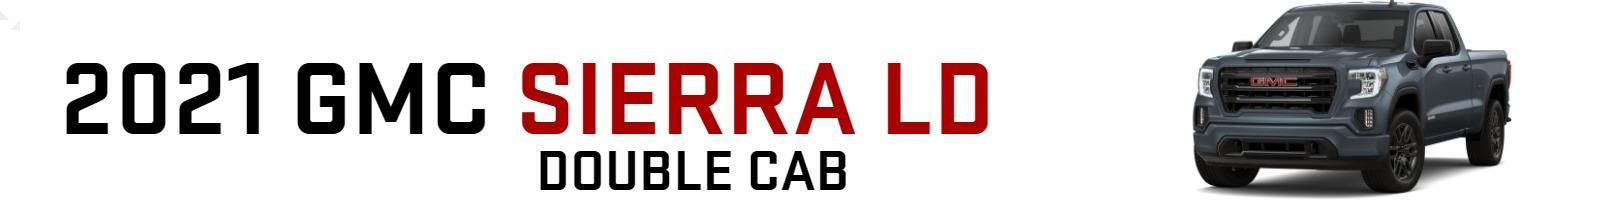 2021 GMC Sierra LD Double Cab